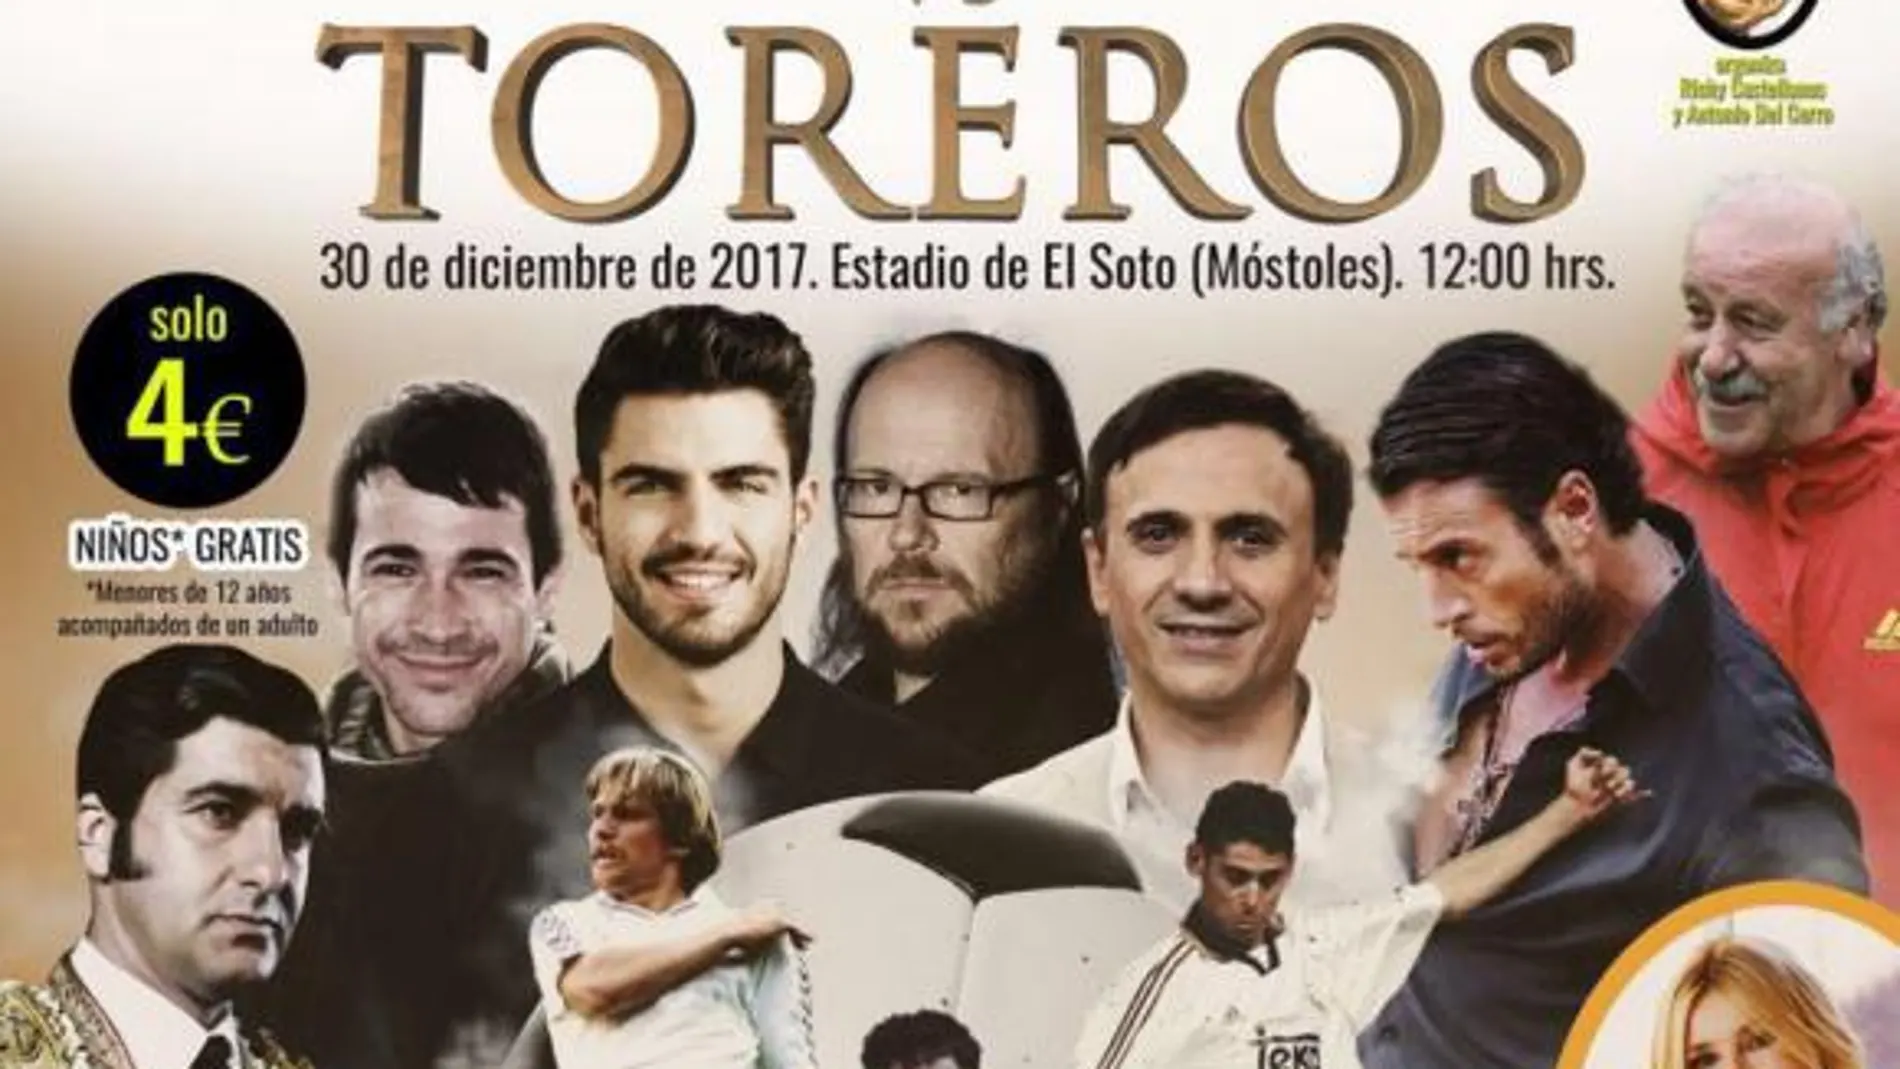 «Artistas vs Toreros»: El partido benéfico para despedir el año